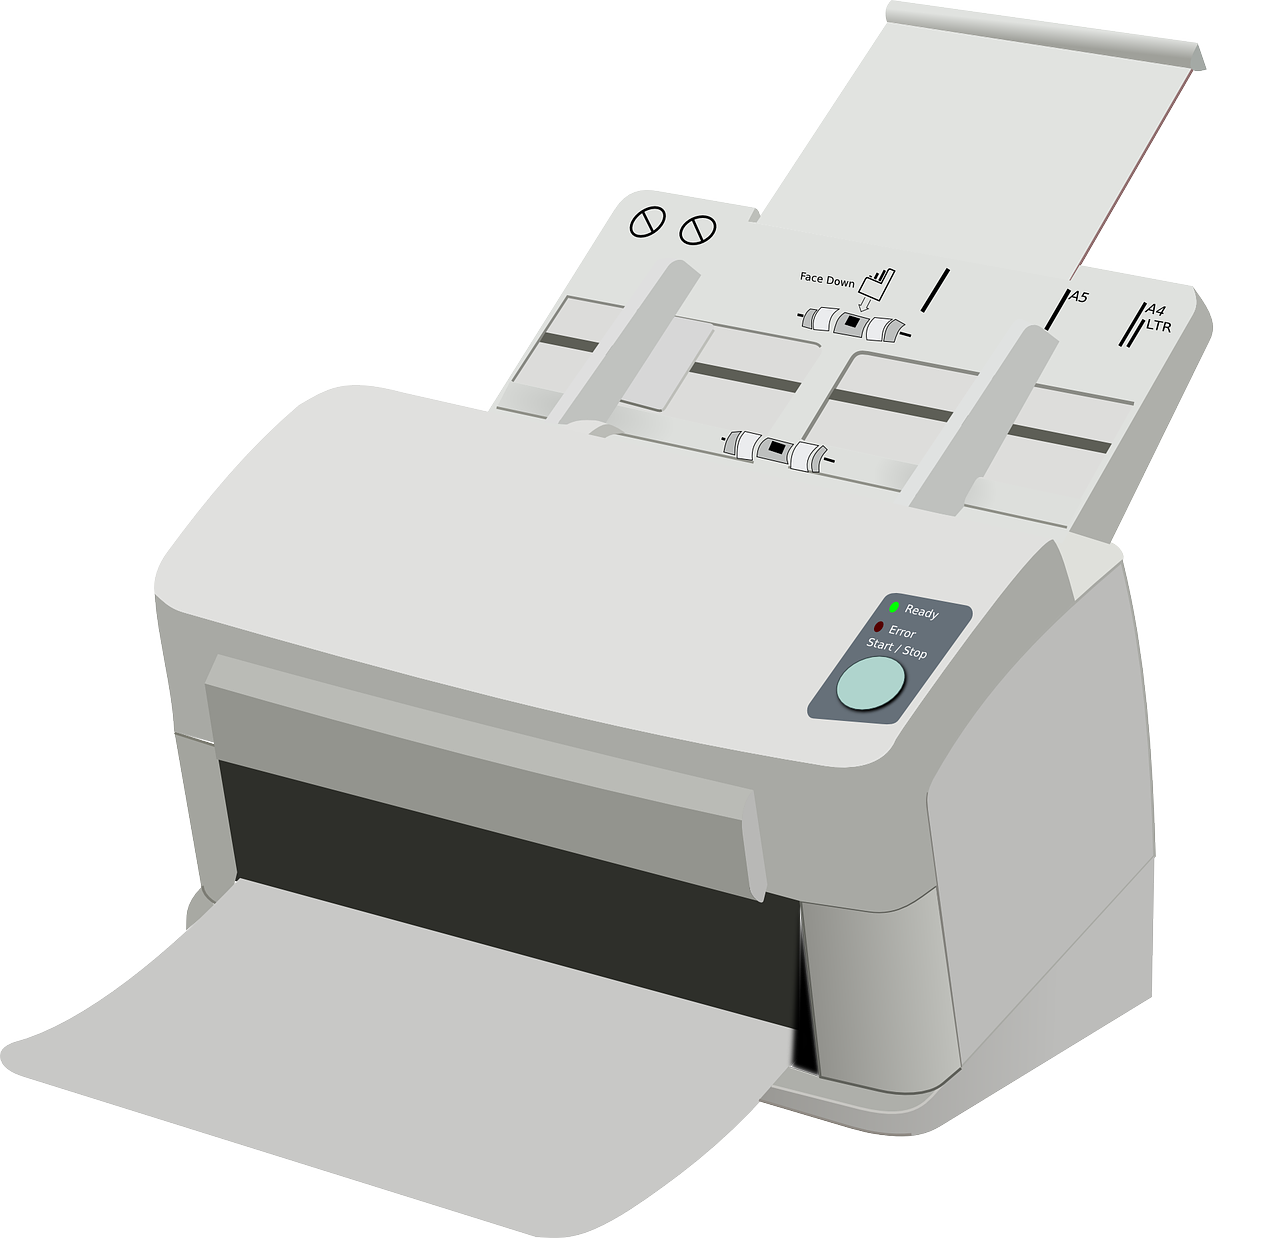 laser printer, printer, electrophotographic printer-149815.jpg

Services en entreprise ou à domicile / Installation périphérique / Réparation d'ordinateur